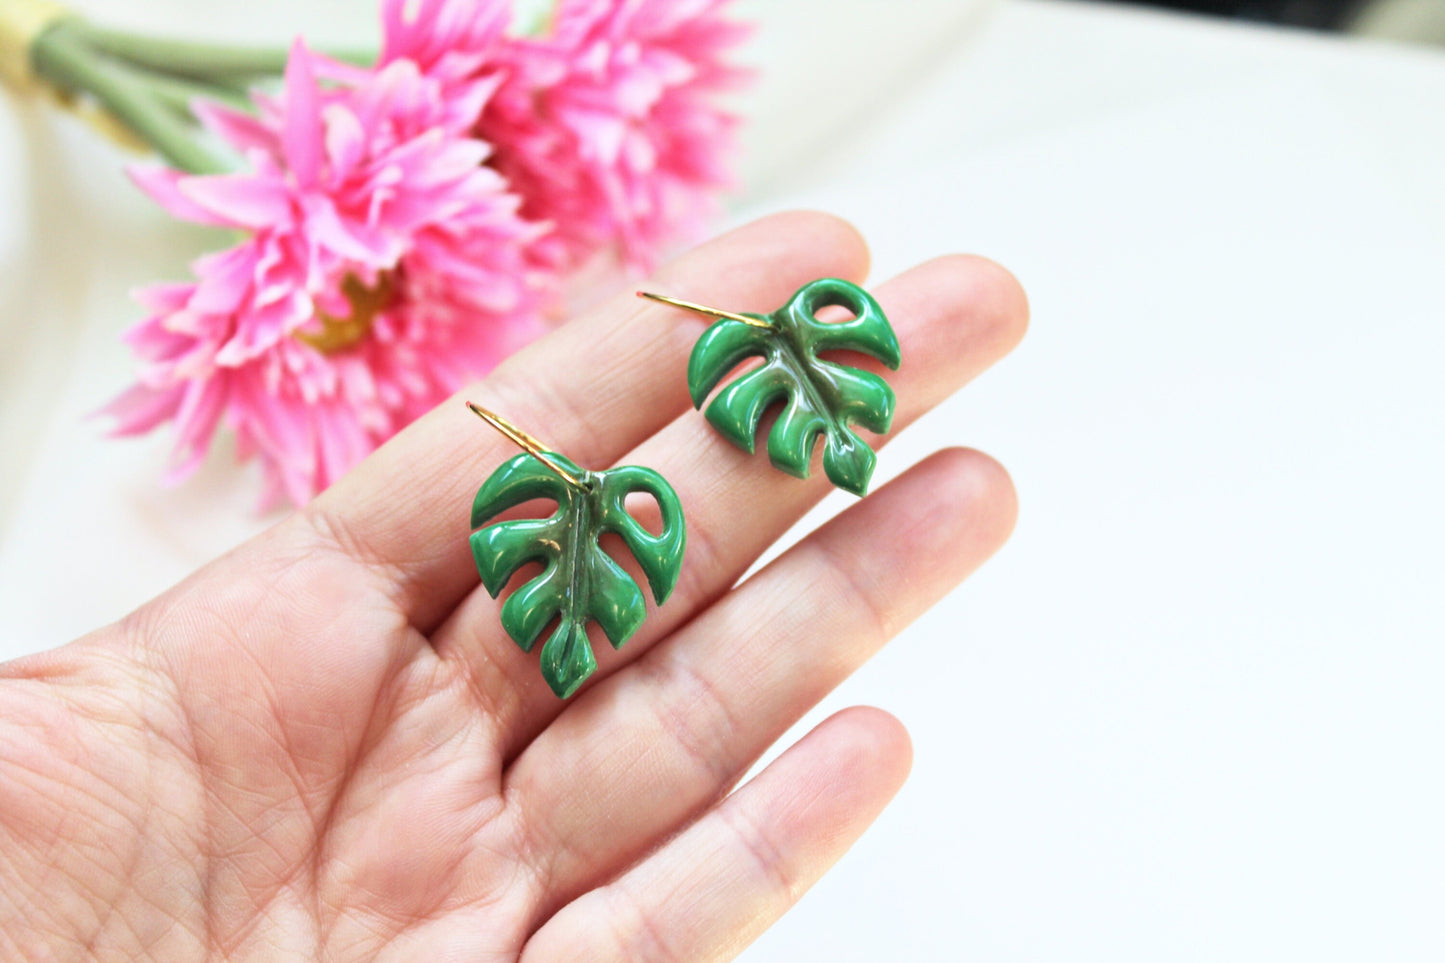 Monstera Leaf Earrings, Leaf Hoops, Polymer Clay Earrings, Leaf Earrings, Green, Nature, Plant Earrings, Clay Earrings, Earrings, Handmade